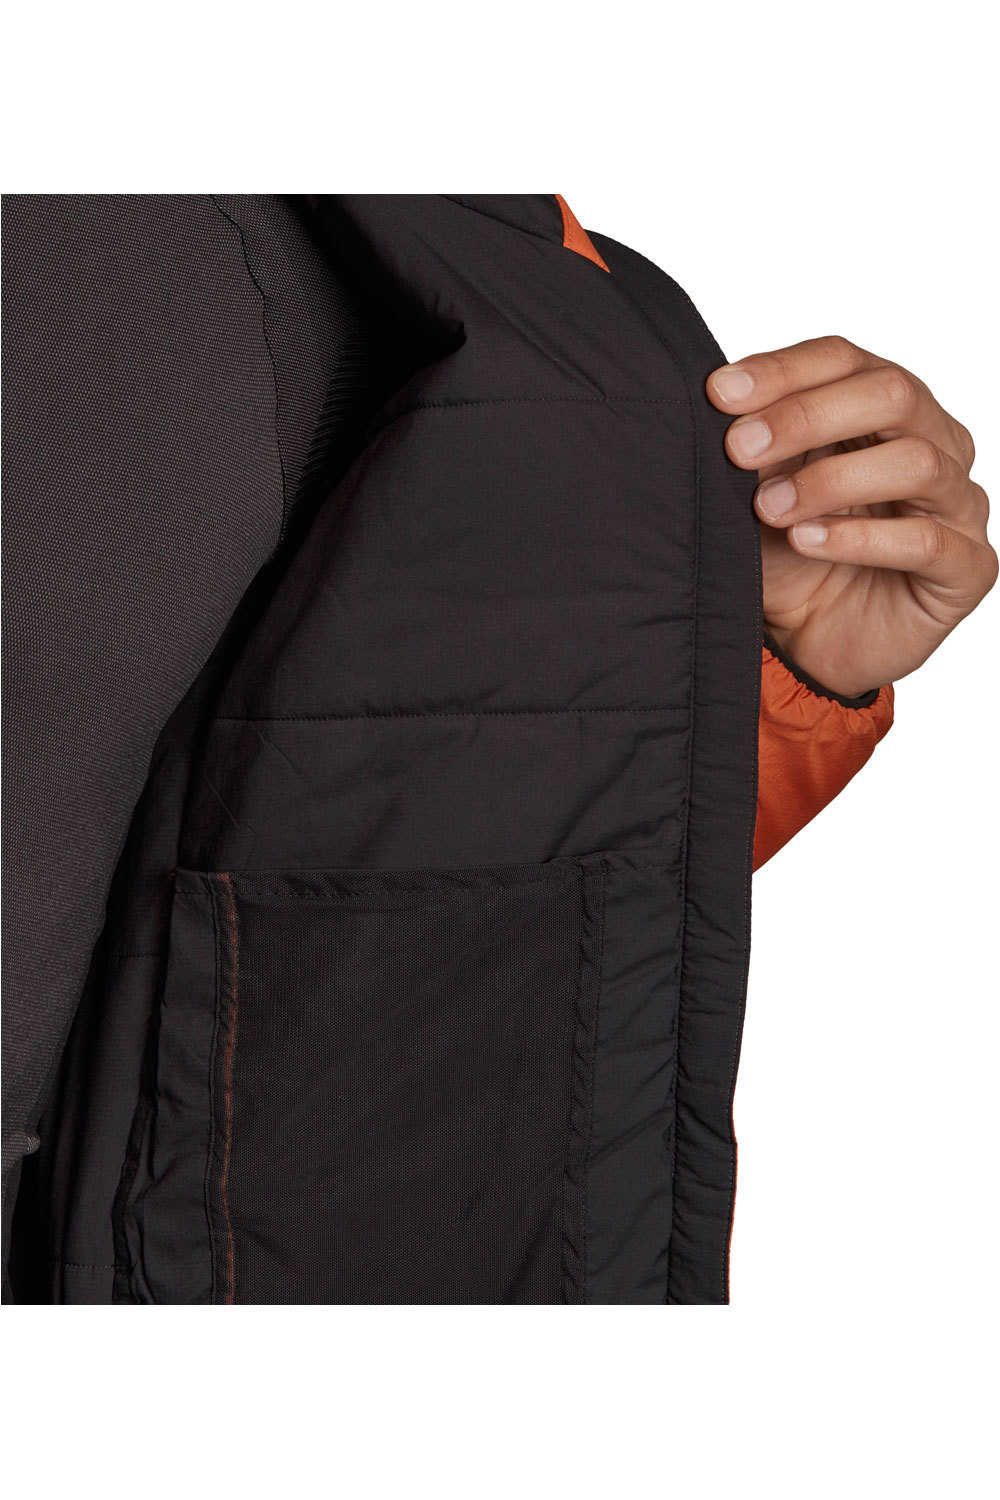 adidas chaqueta outdoor hombre Insulation J 04